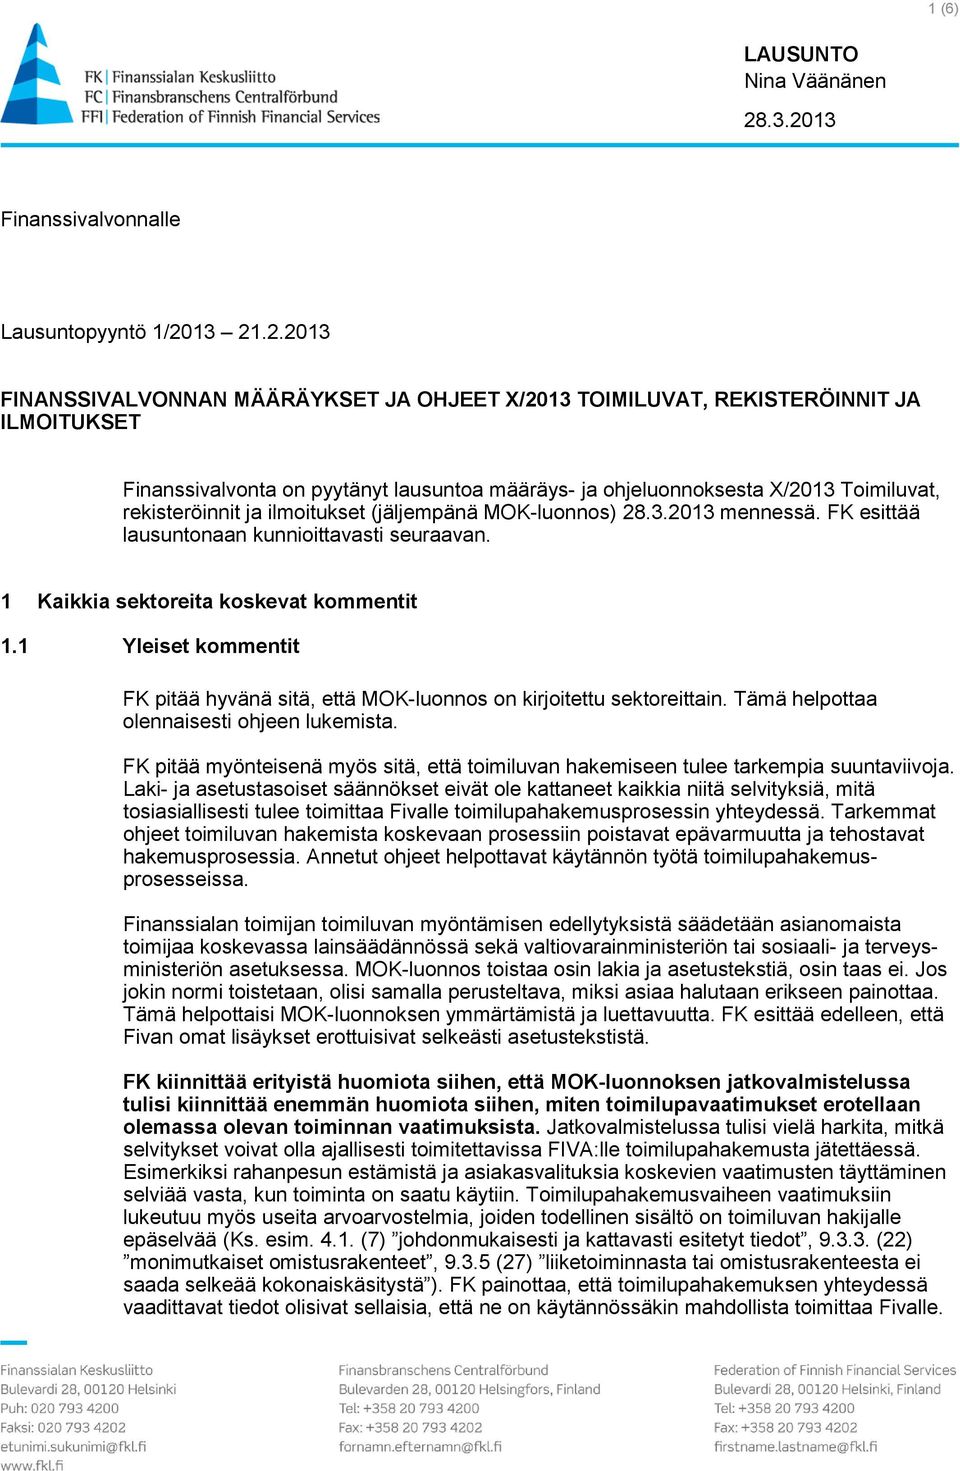 ohjeluonnoksesta X/2013 Toimiluvat, rekisteröinnit ja ilmoitukset (jäljempänä MOK-luonnos) 28.3.2013 mennessä. FK esittää lausuntonaan kunnioittavasti seuraavan.